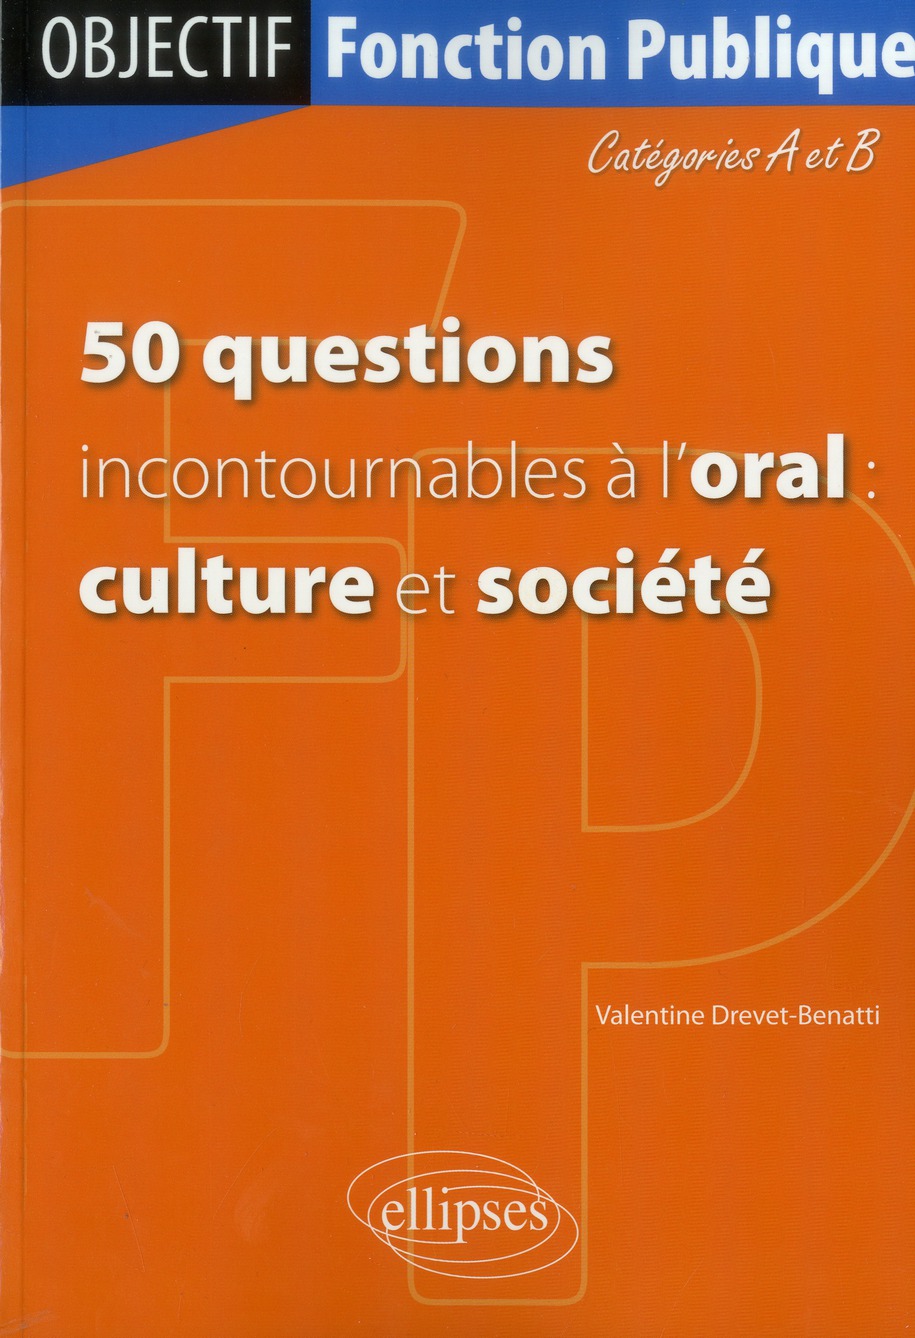 50 QUESTIONS INCONTOURNABLES A L ORAL CULTURE ET SOCIETE) - CATEGORIE A/B